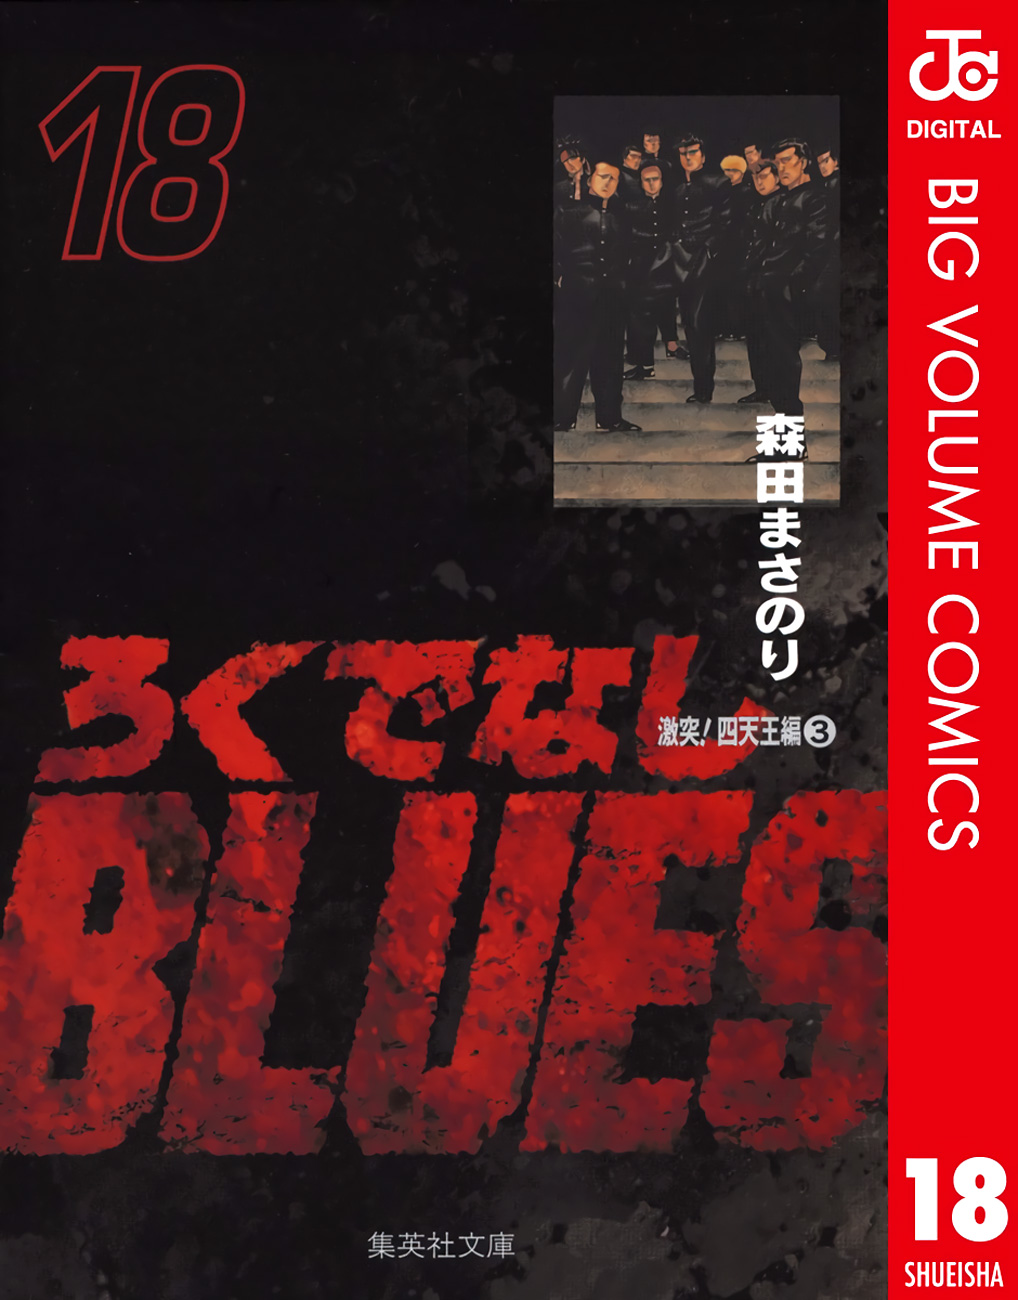 Rokudenashi Blues - Page 2